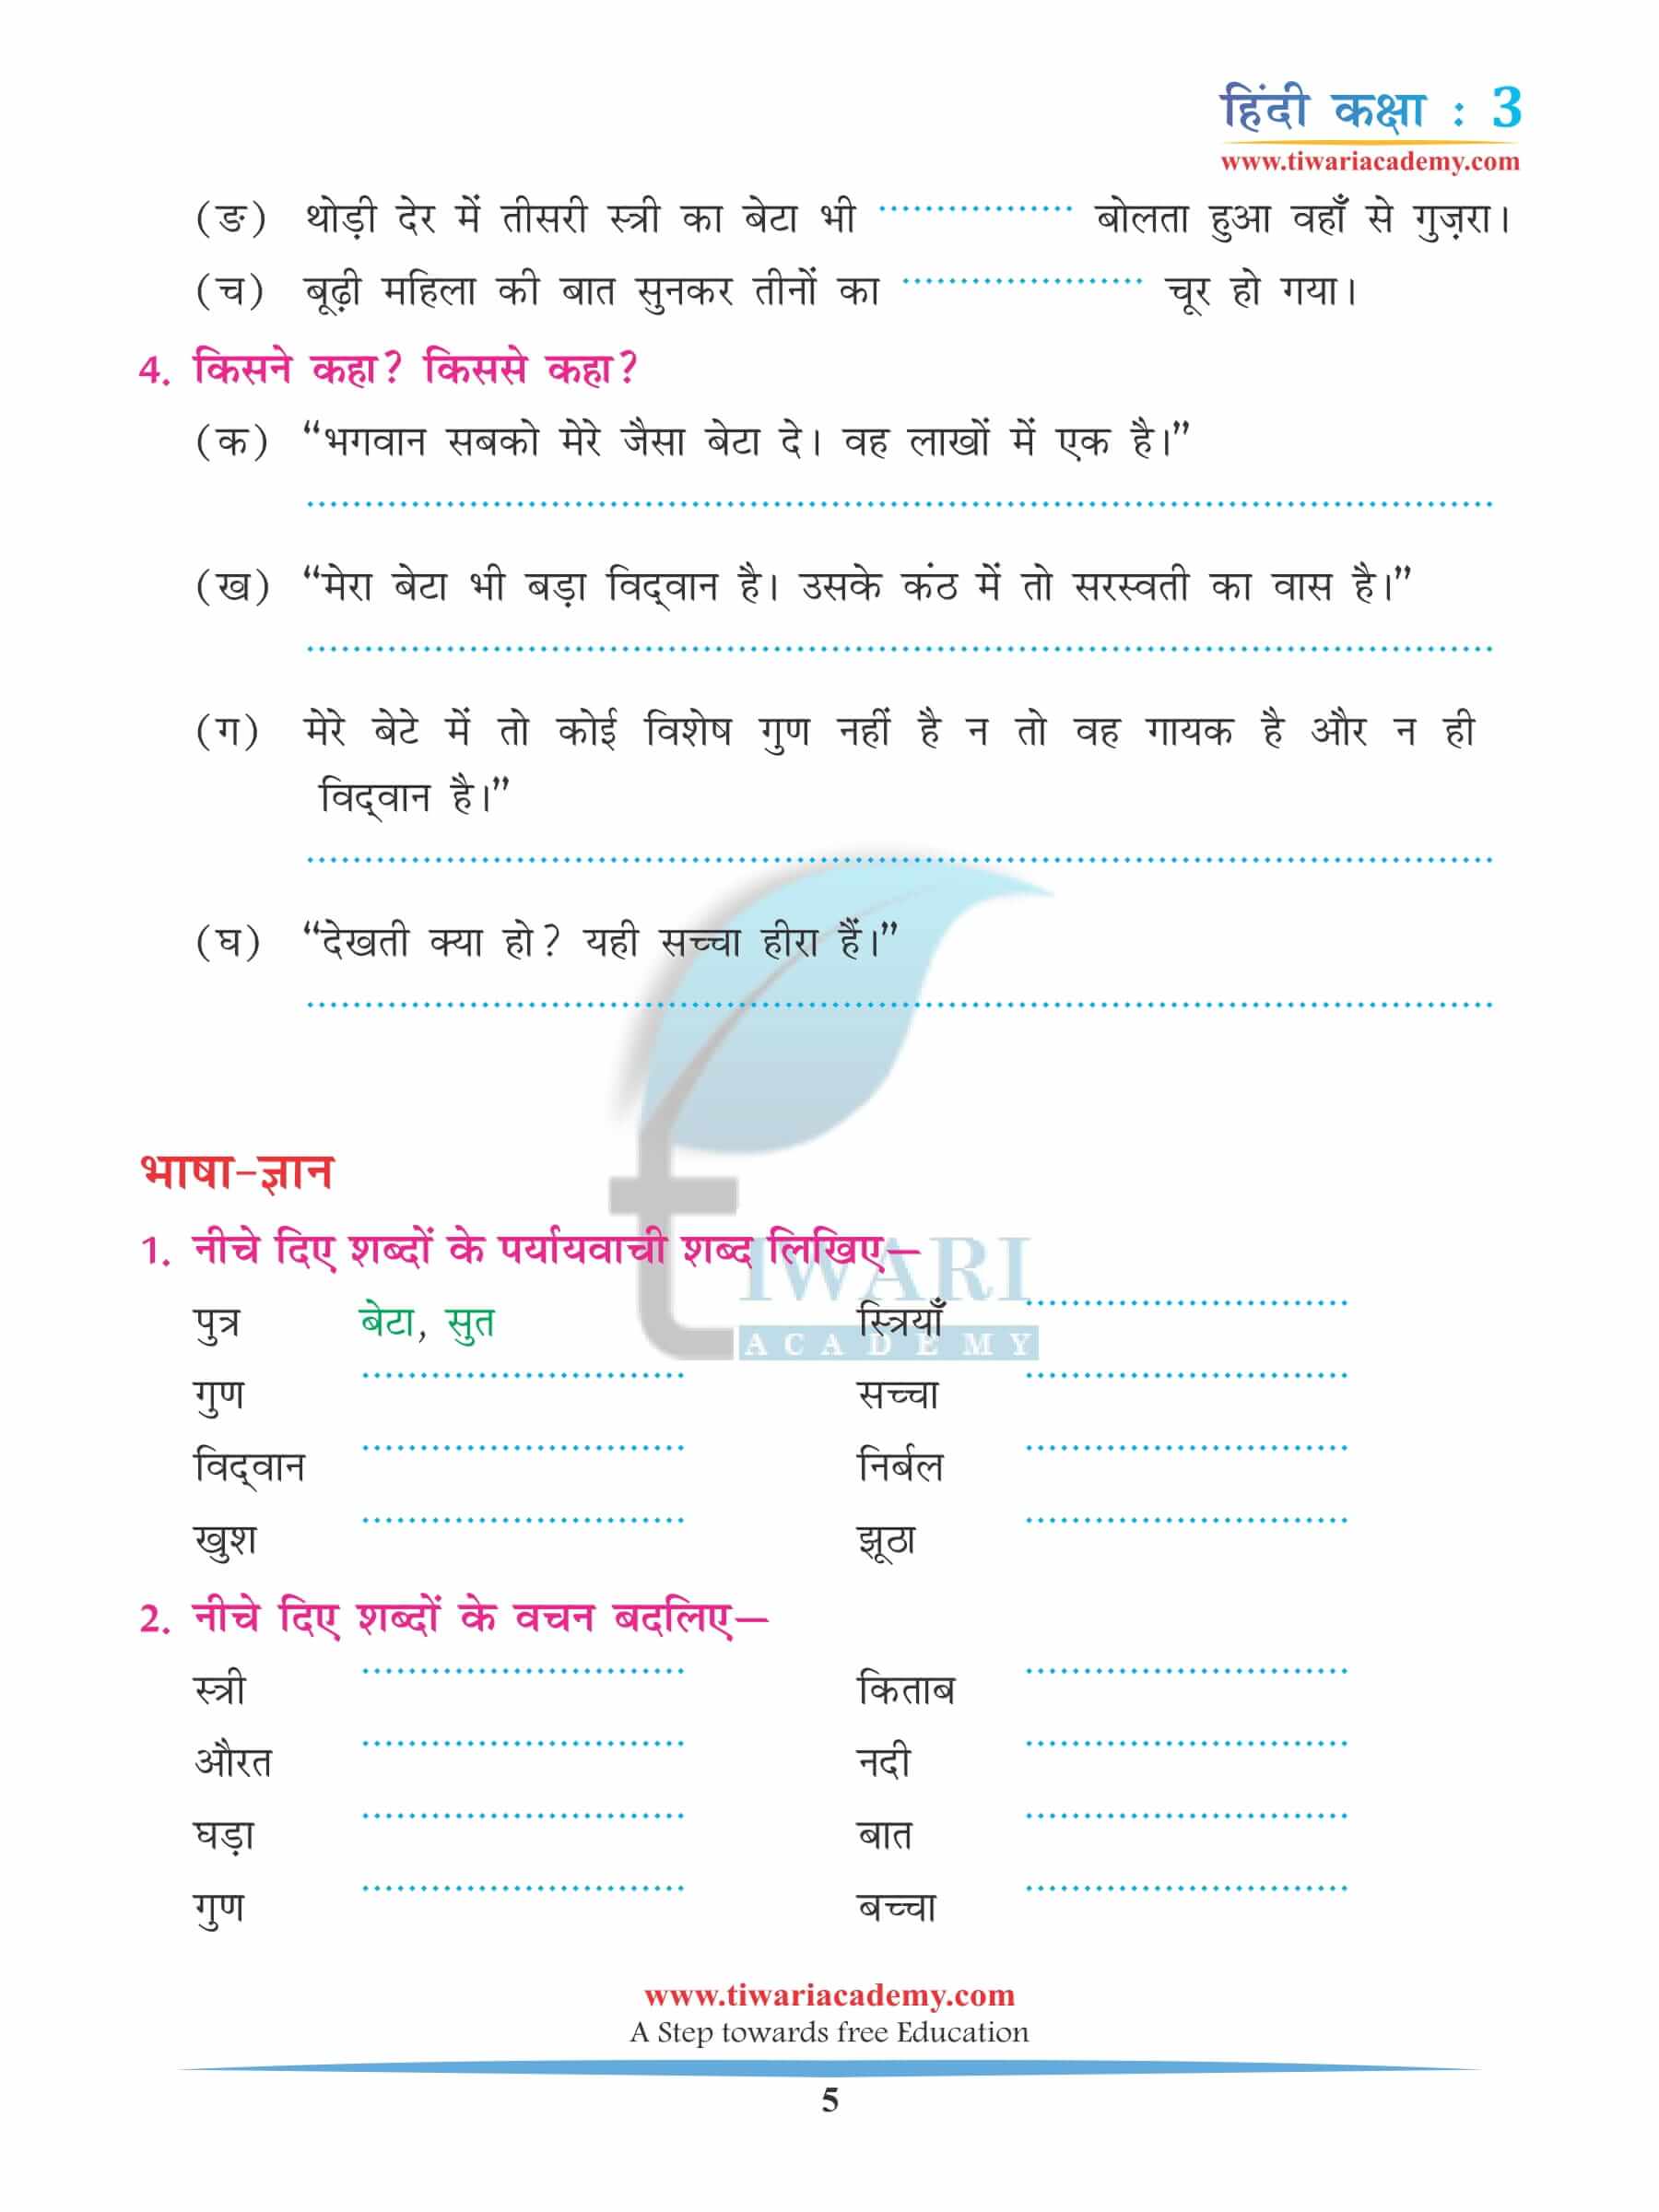 कक्षा 3 हिंदी अध्याय 12 अभ्यास के लिए किताब